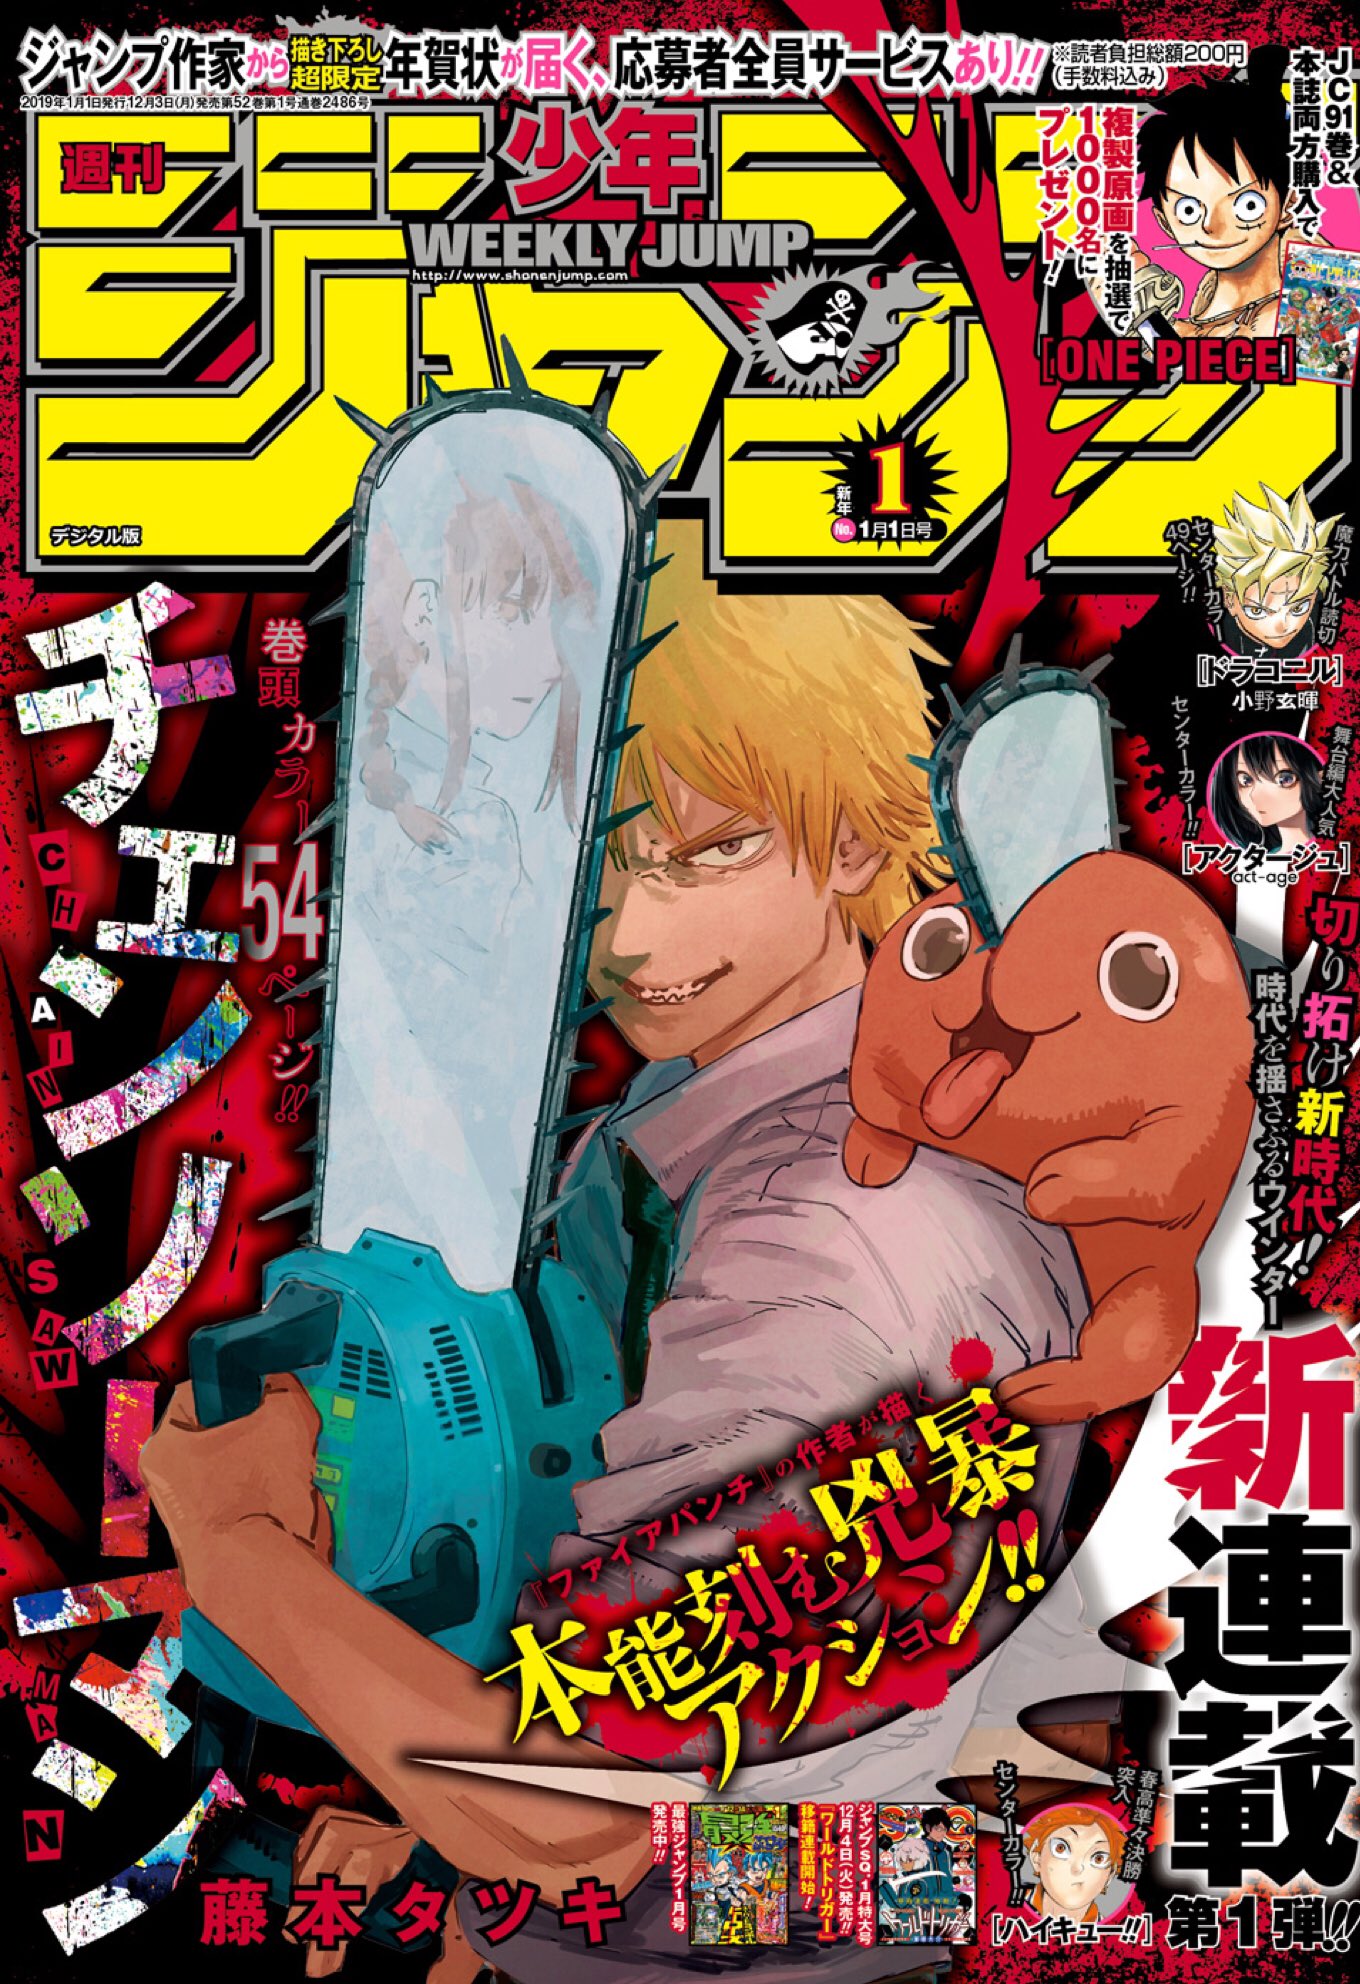 Weekly Shonen Jump 1 週刊少年ジャンプ 19年1号 19 Shueisha